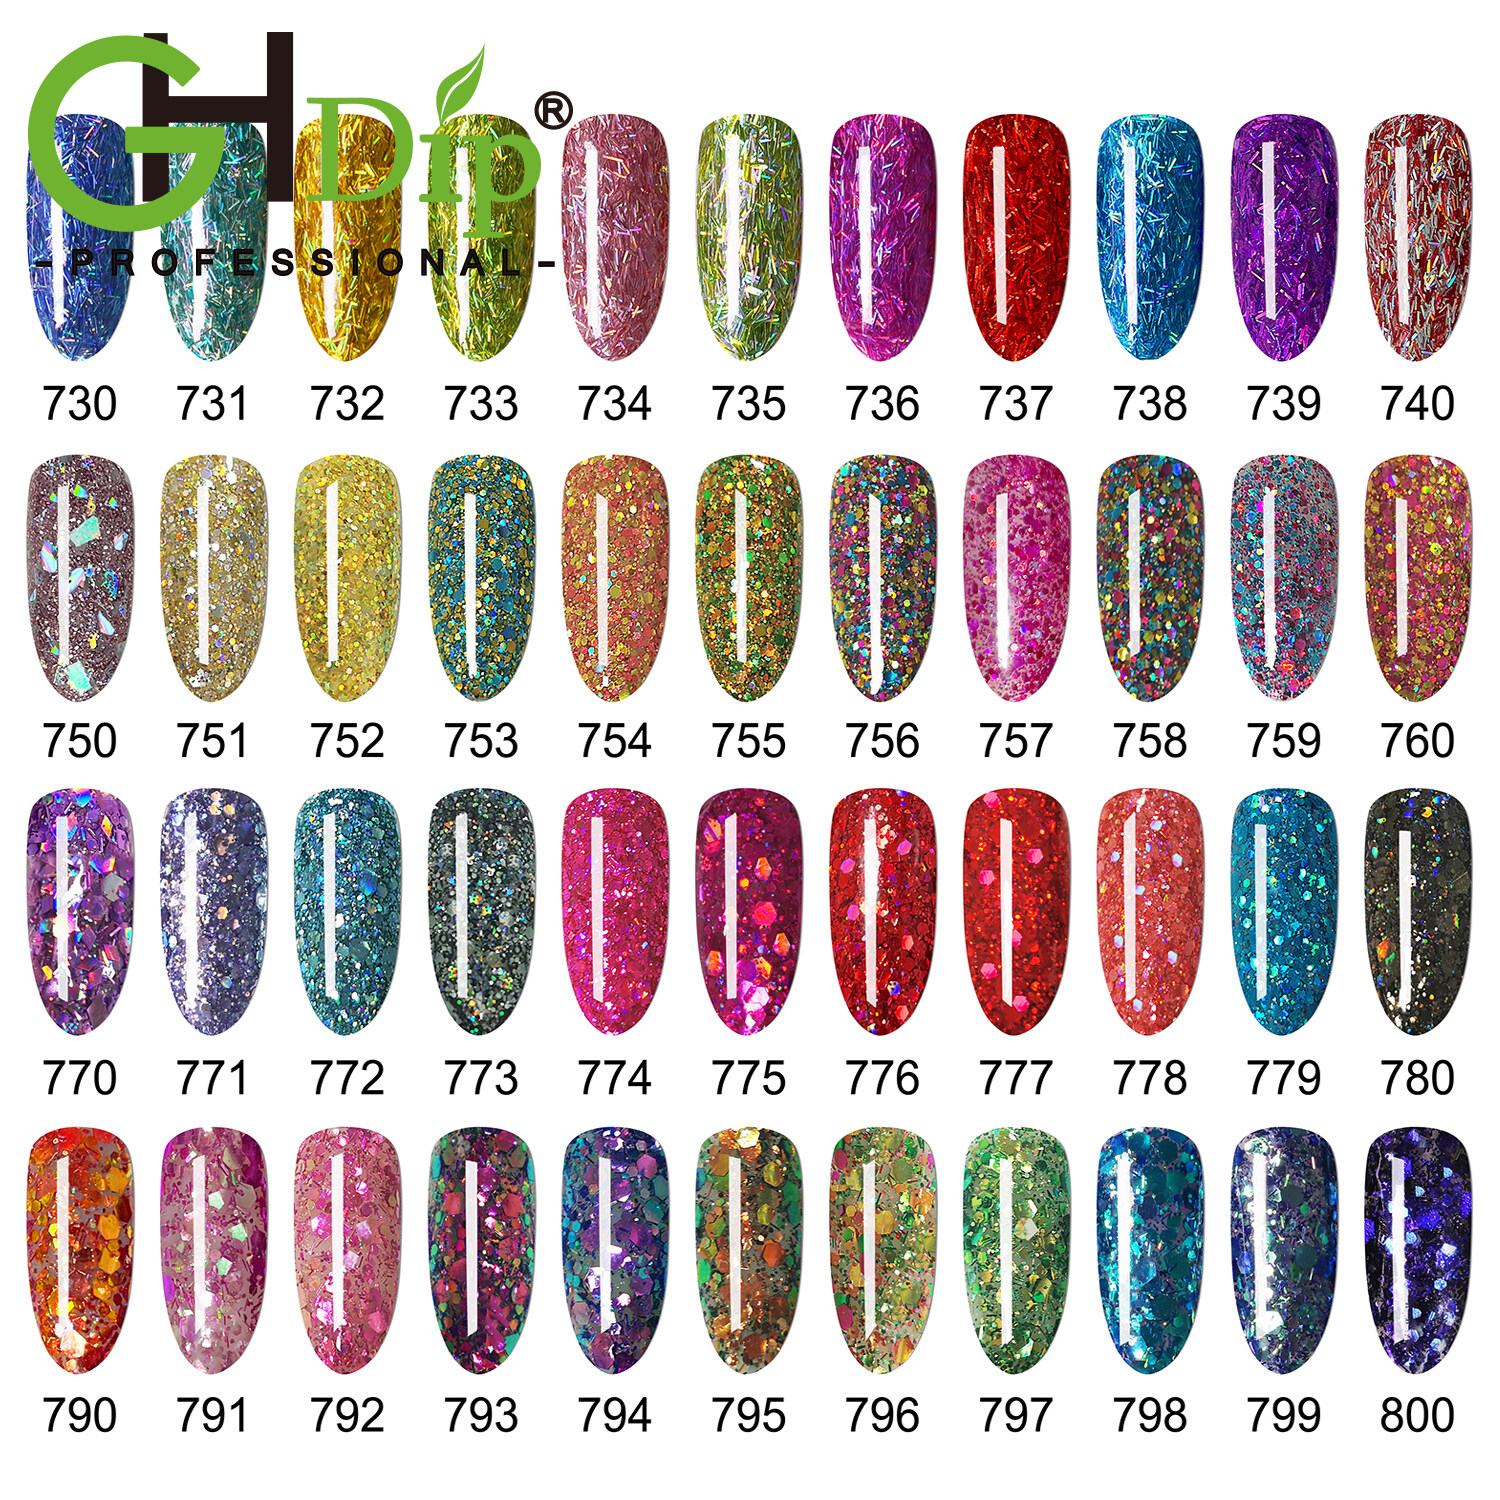 中国のアクリルパウダー、透明なアクリル爪パウダーバルク、色アクリルパウダー卸売、色の変化アクリル爪パウダー、カラーパウダーアクリルネイル